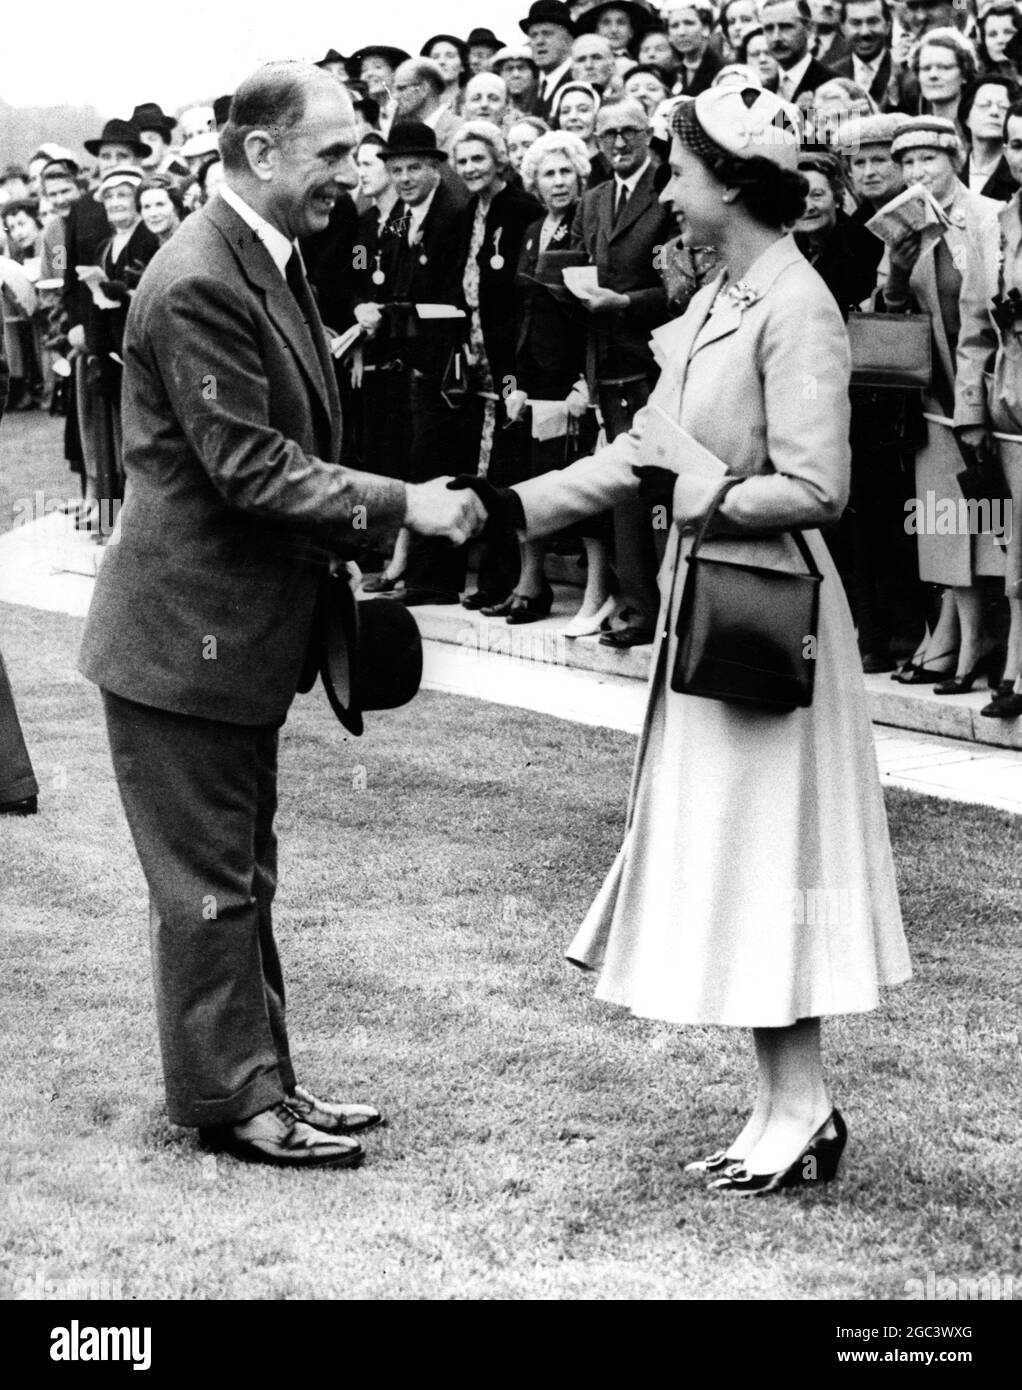 Marchese Incisa della Rocchetta erhält Glückwünsche von HM the Queen, nachdem sein Pferd Ribot am 21. Juli 1956 den König Georg VI. Und die Königin Elizabeth Stakes bei Ascot gewonnen hatte Stockfoto